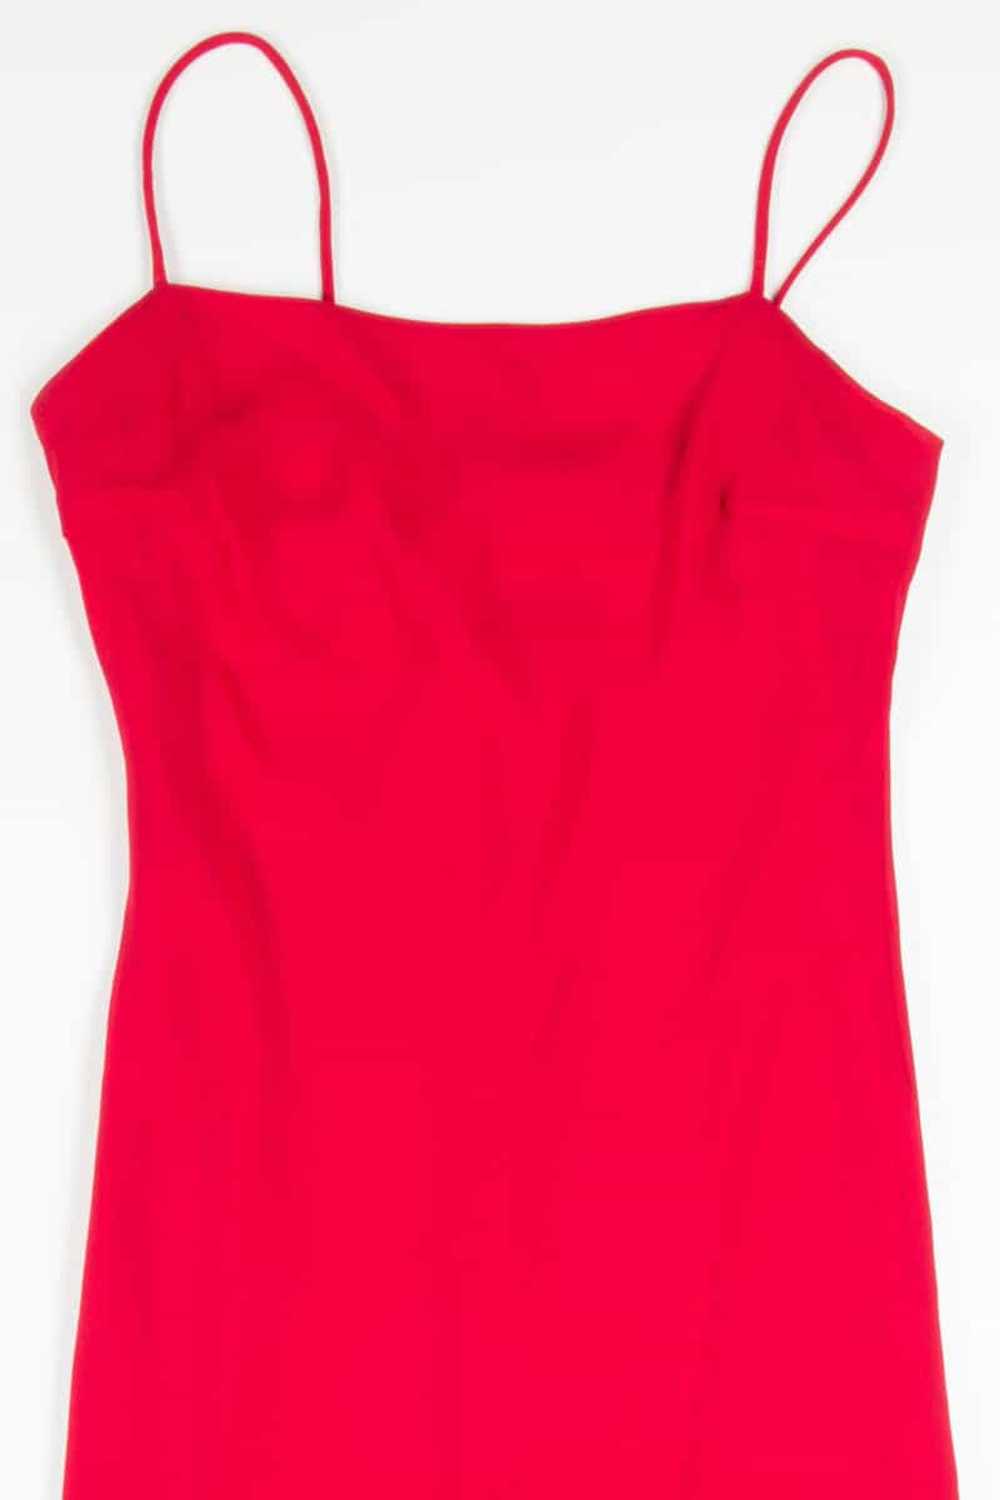 Red Chiffon Ruffle Evening Dress - image 2